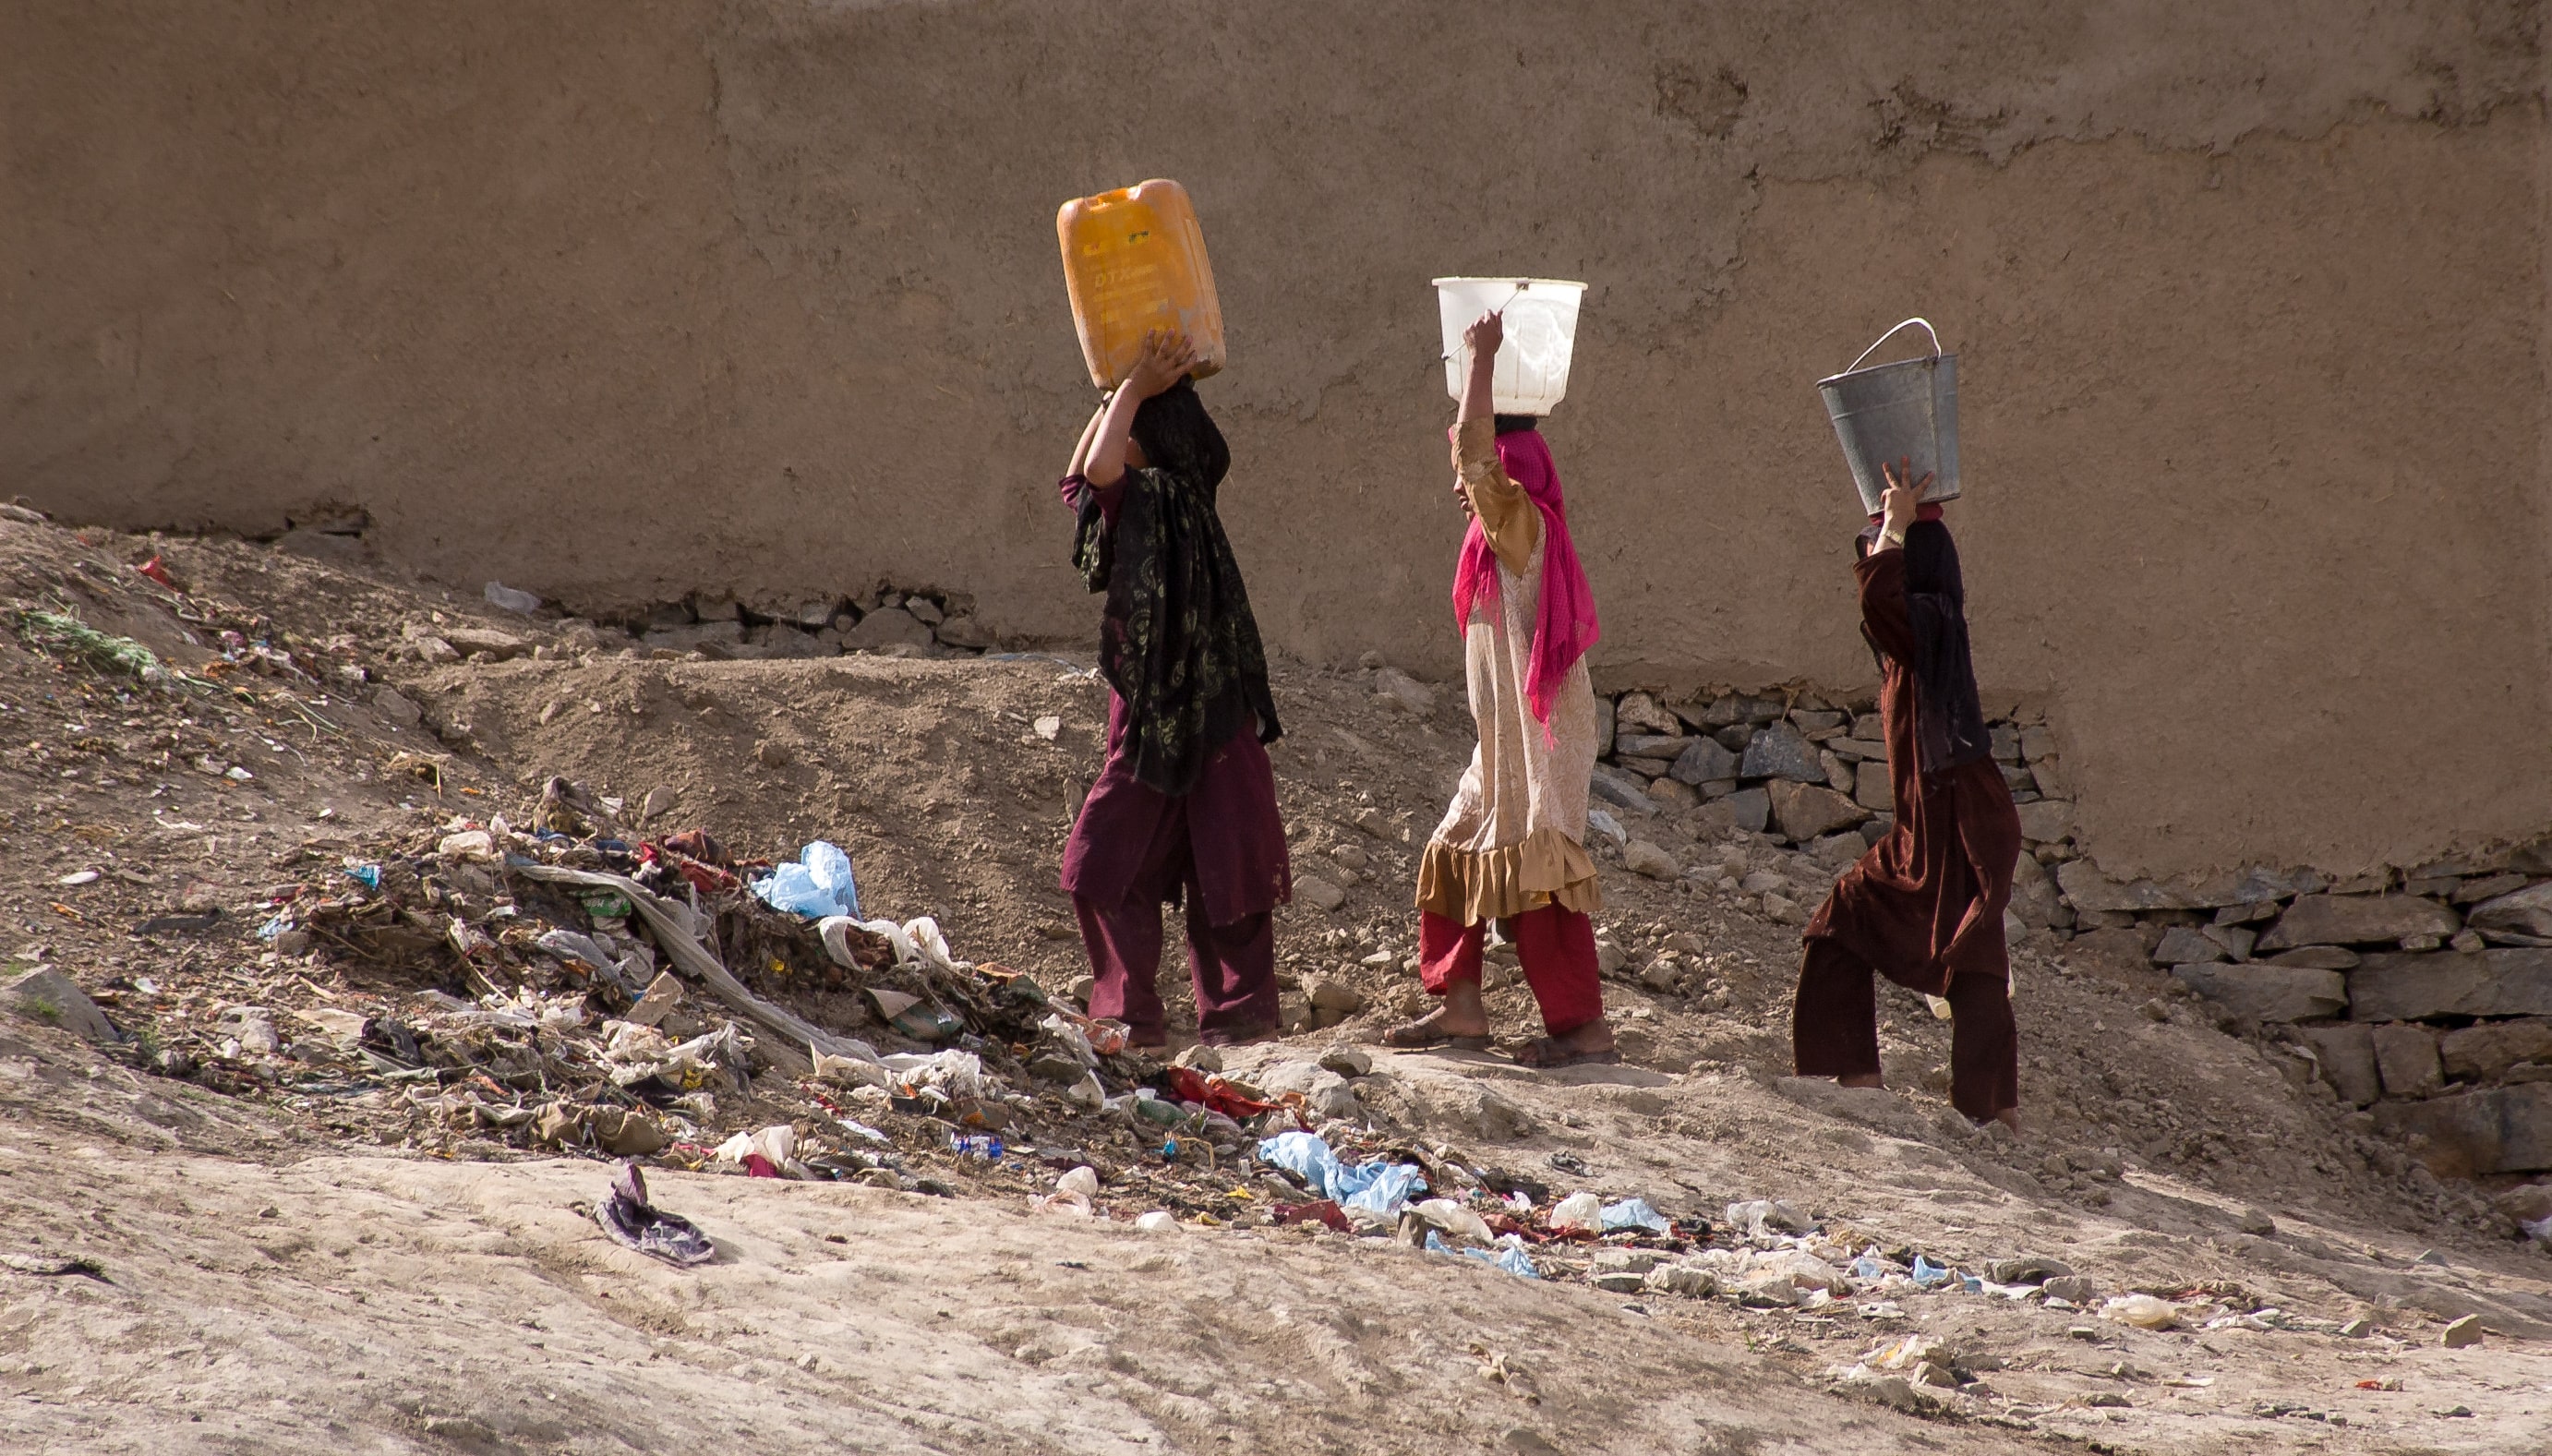 Seit 2022 haben Frauen in Afghanistan ein Arbeitsverbot für Nichtsregierungsorganisationen. (Foto: AdobeStock/timsimages.uk)